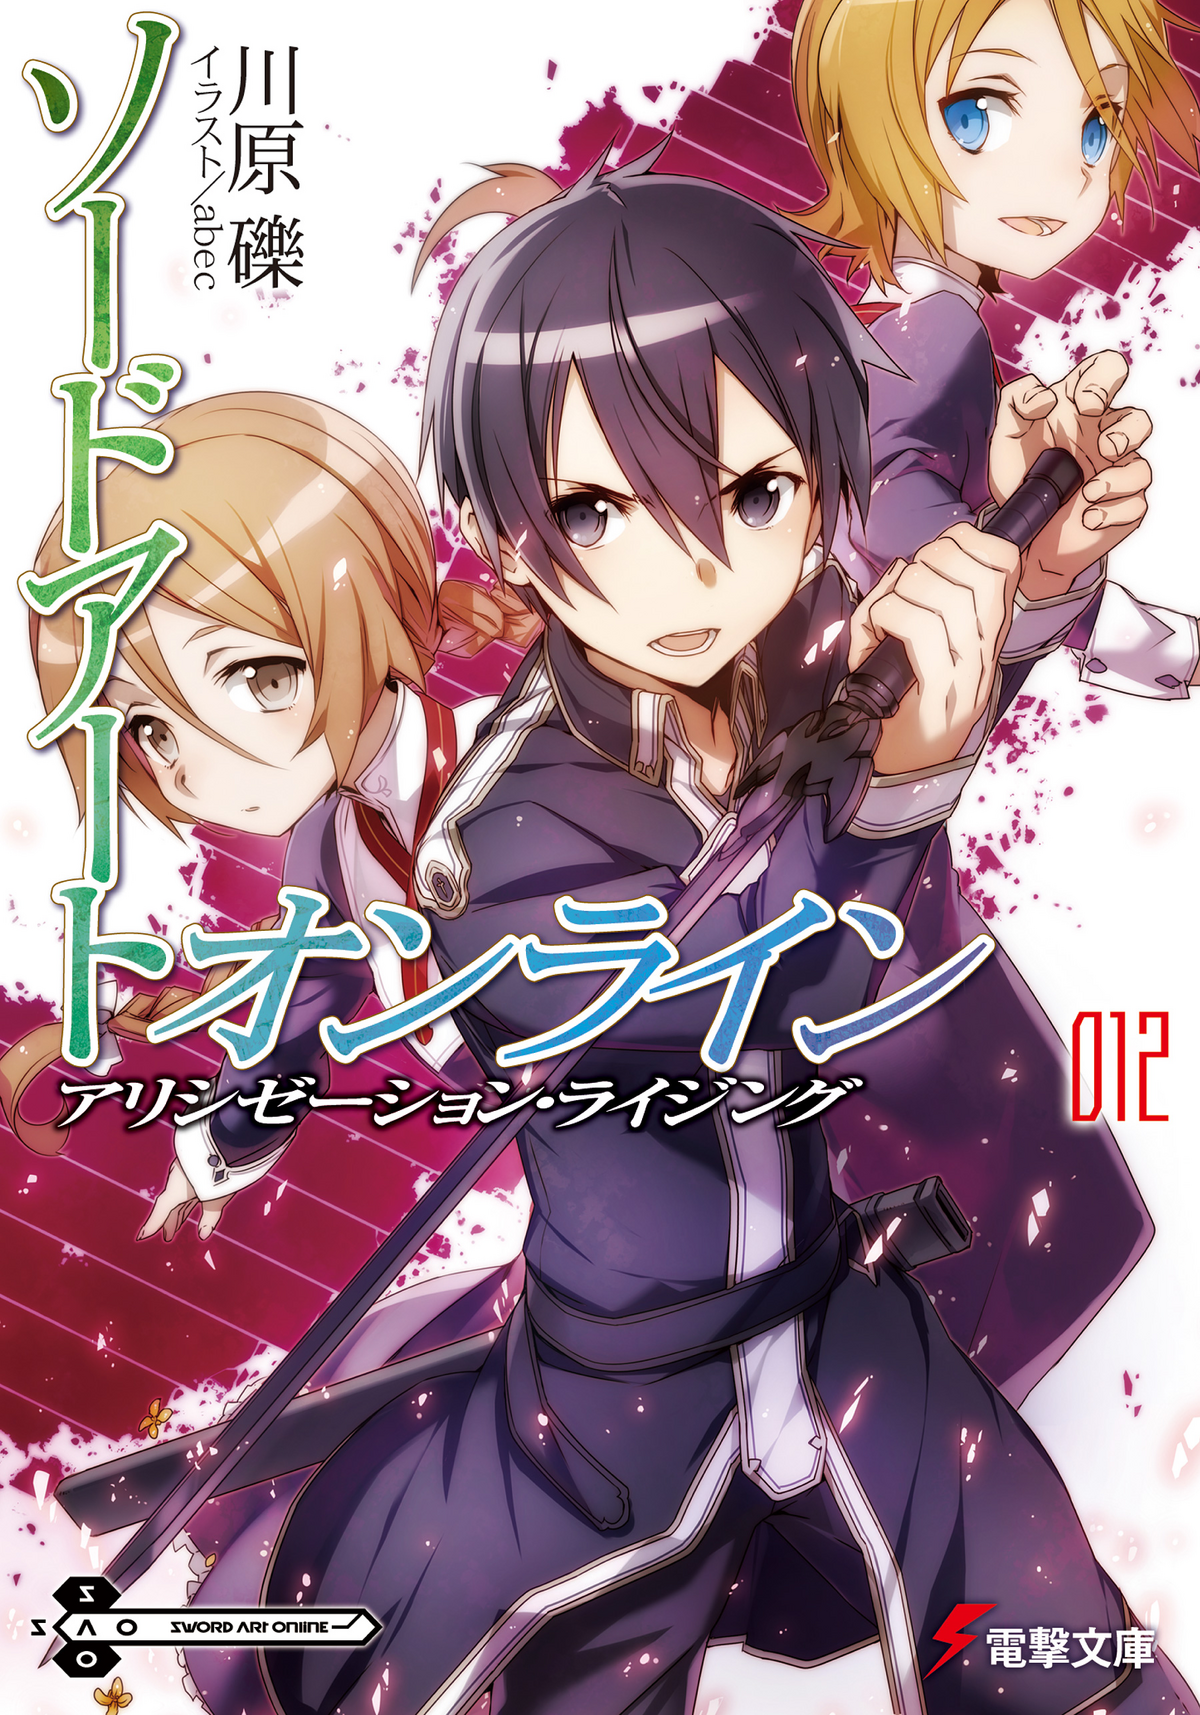 Sword Art Online Light Novel Volume 12 | Sword Art Online Wiki 